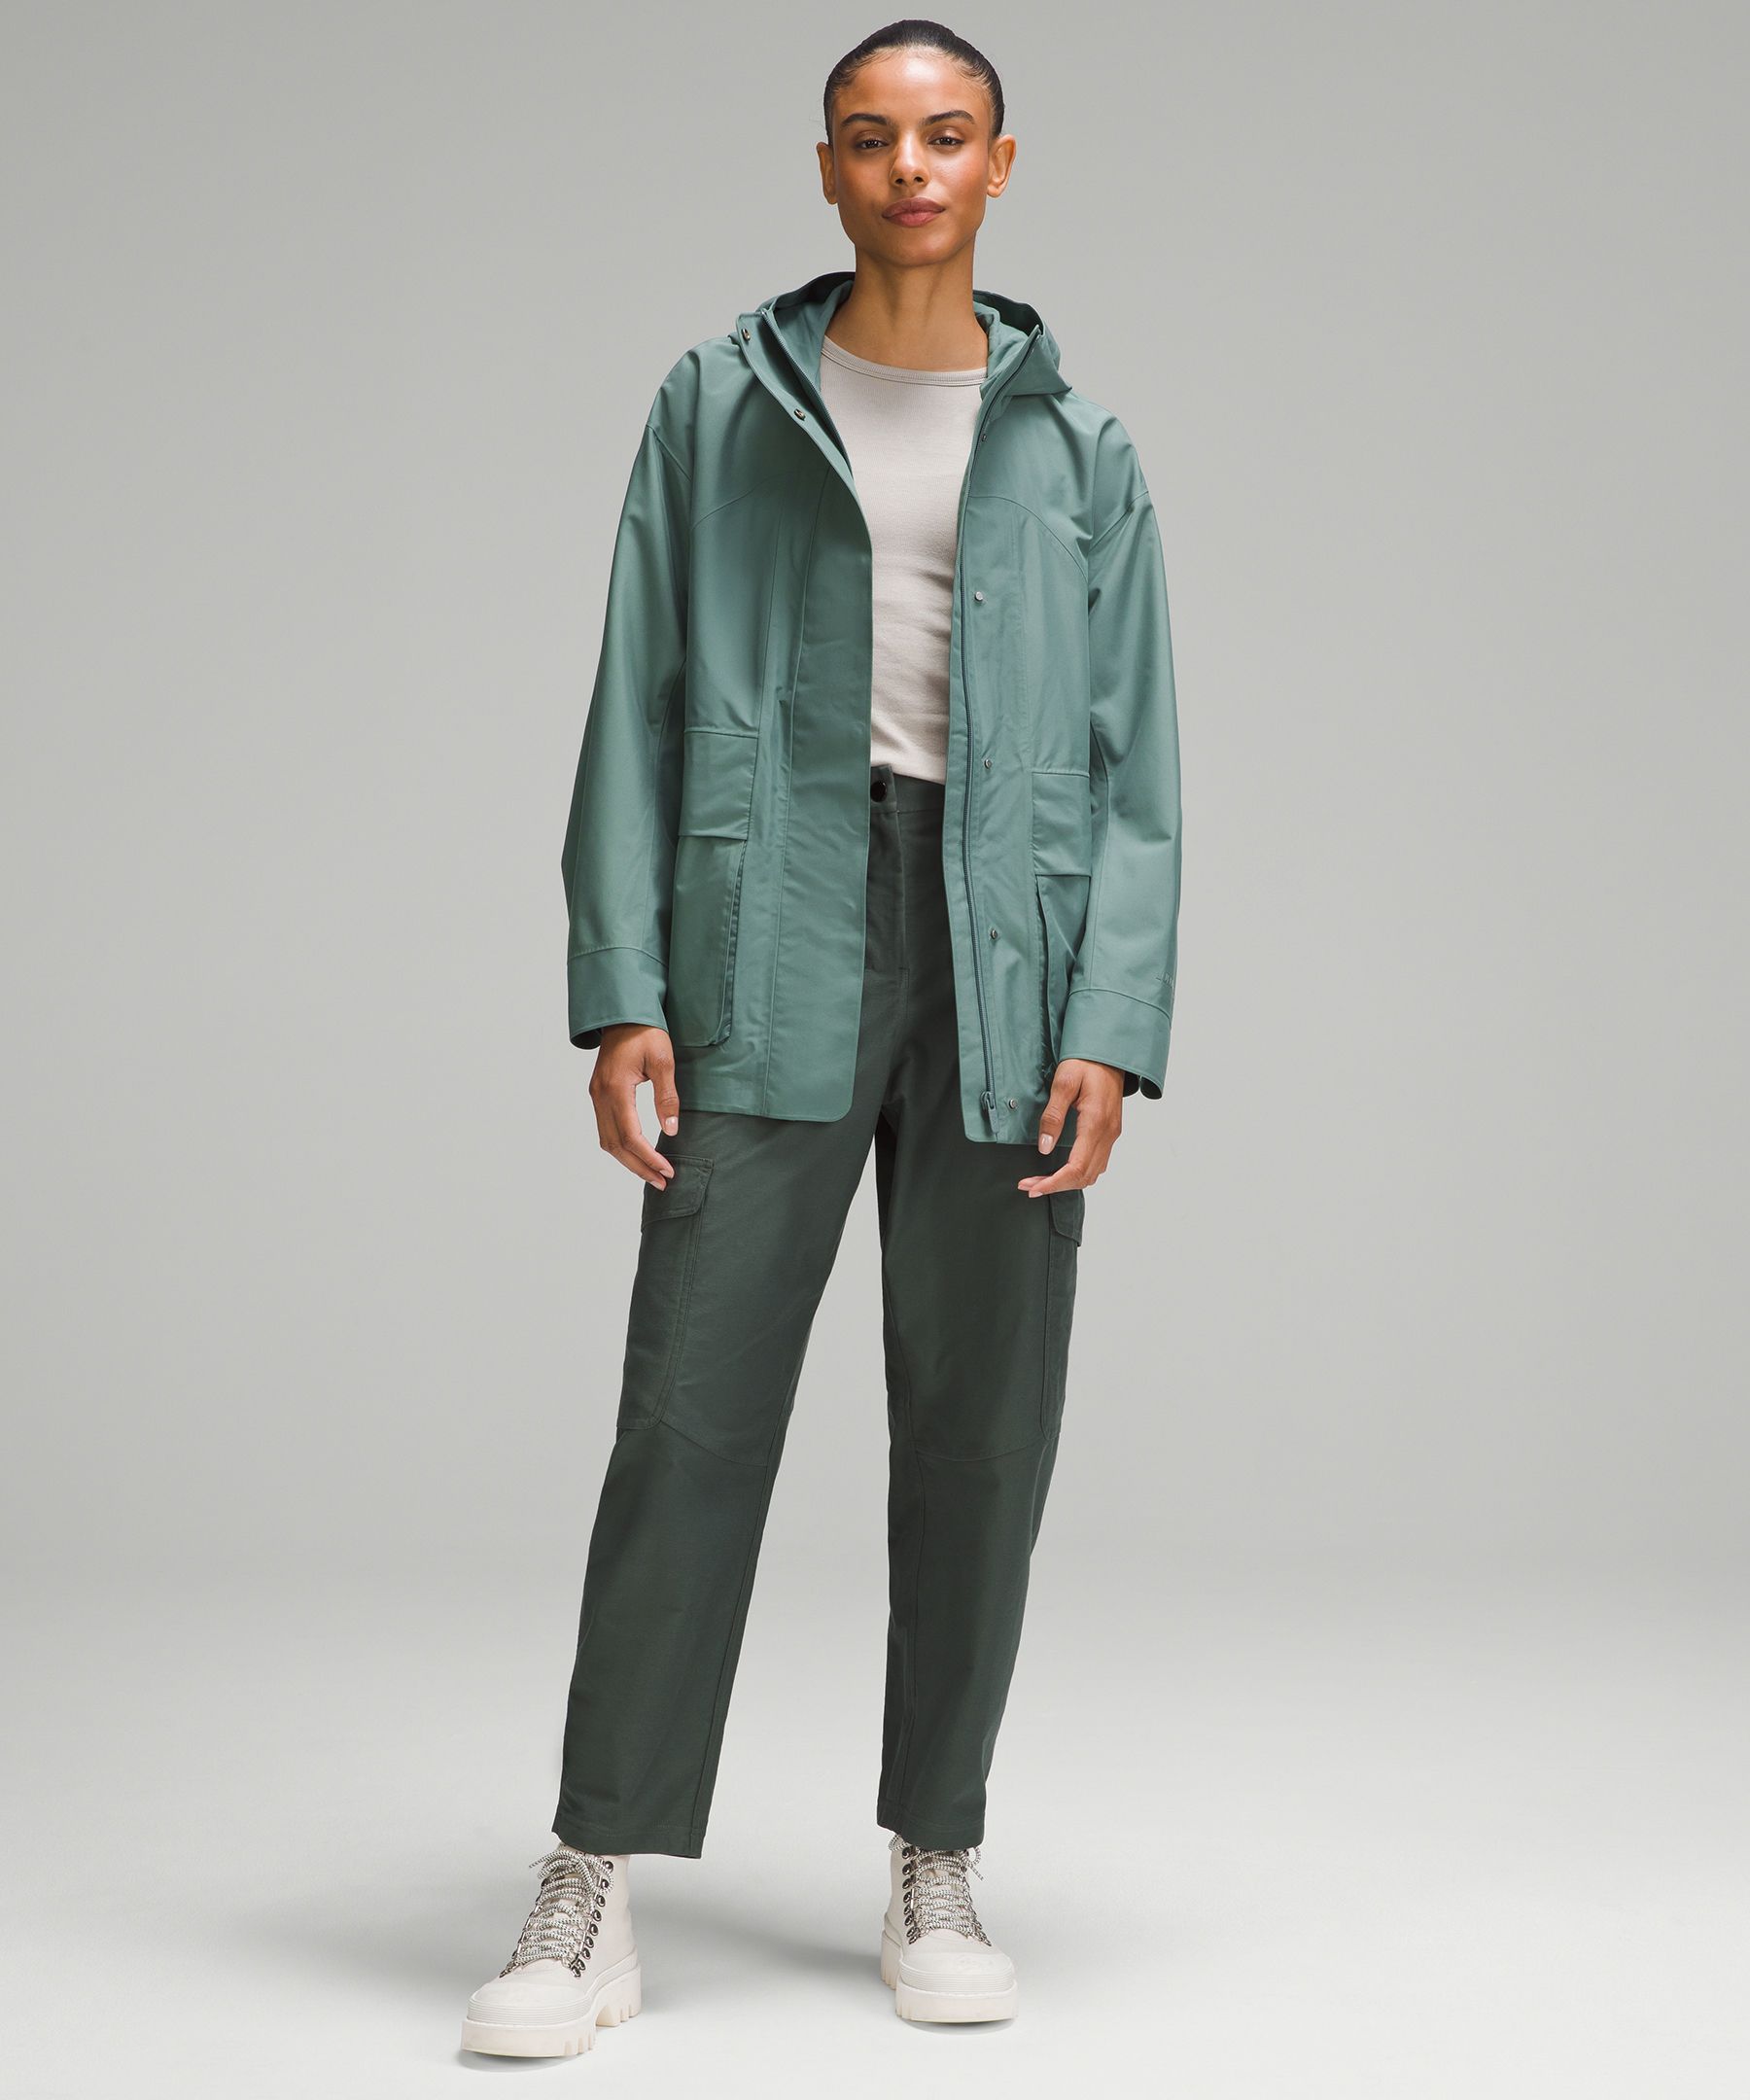 Bag Raincoat medium Size Rain Slicker for Designer -  Canada